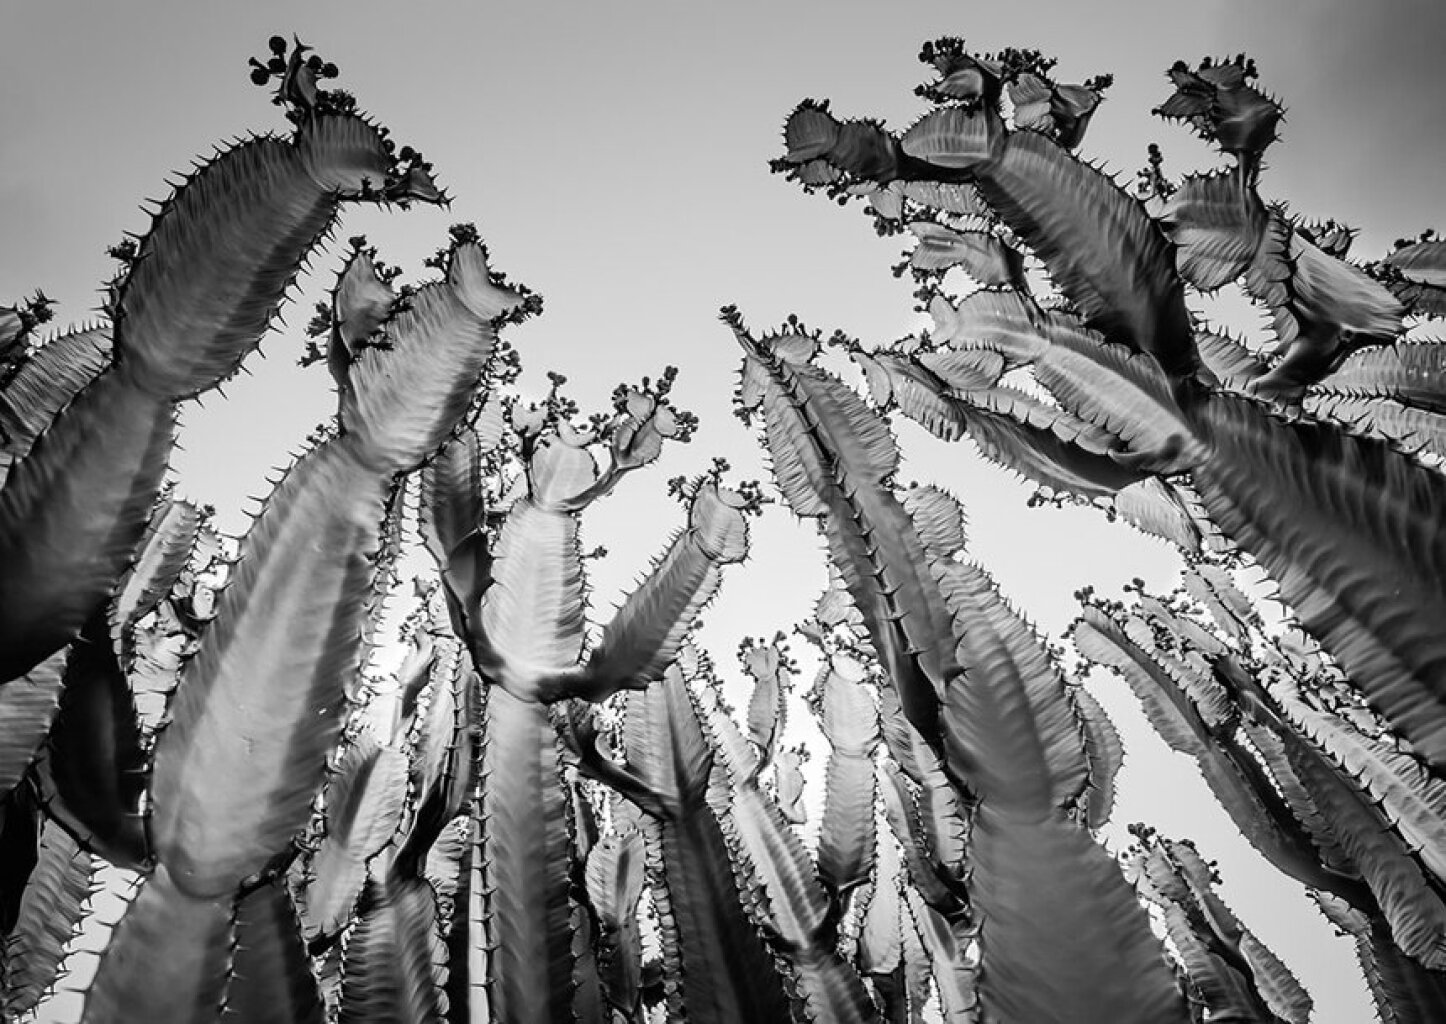 Quadro Cactus gigantes P&B por Edmoraes -  CATEGORIAS